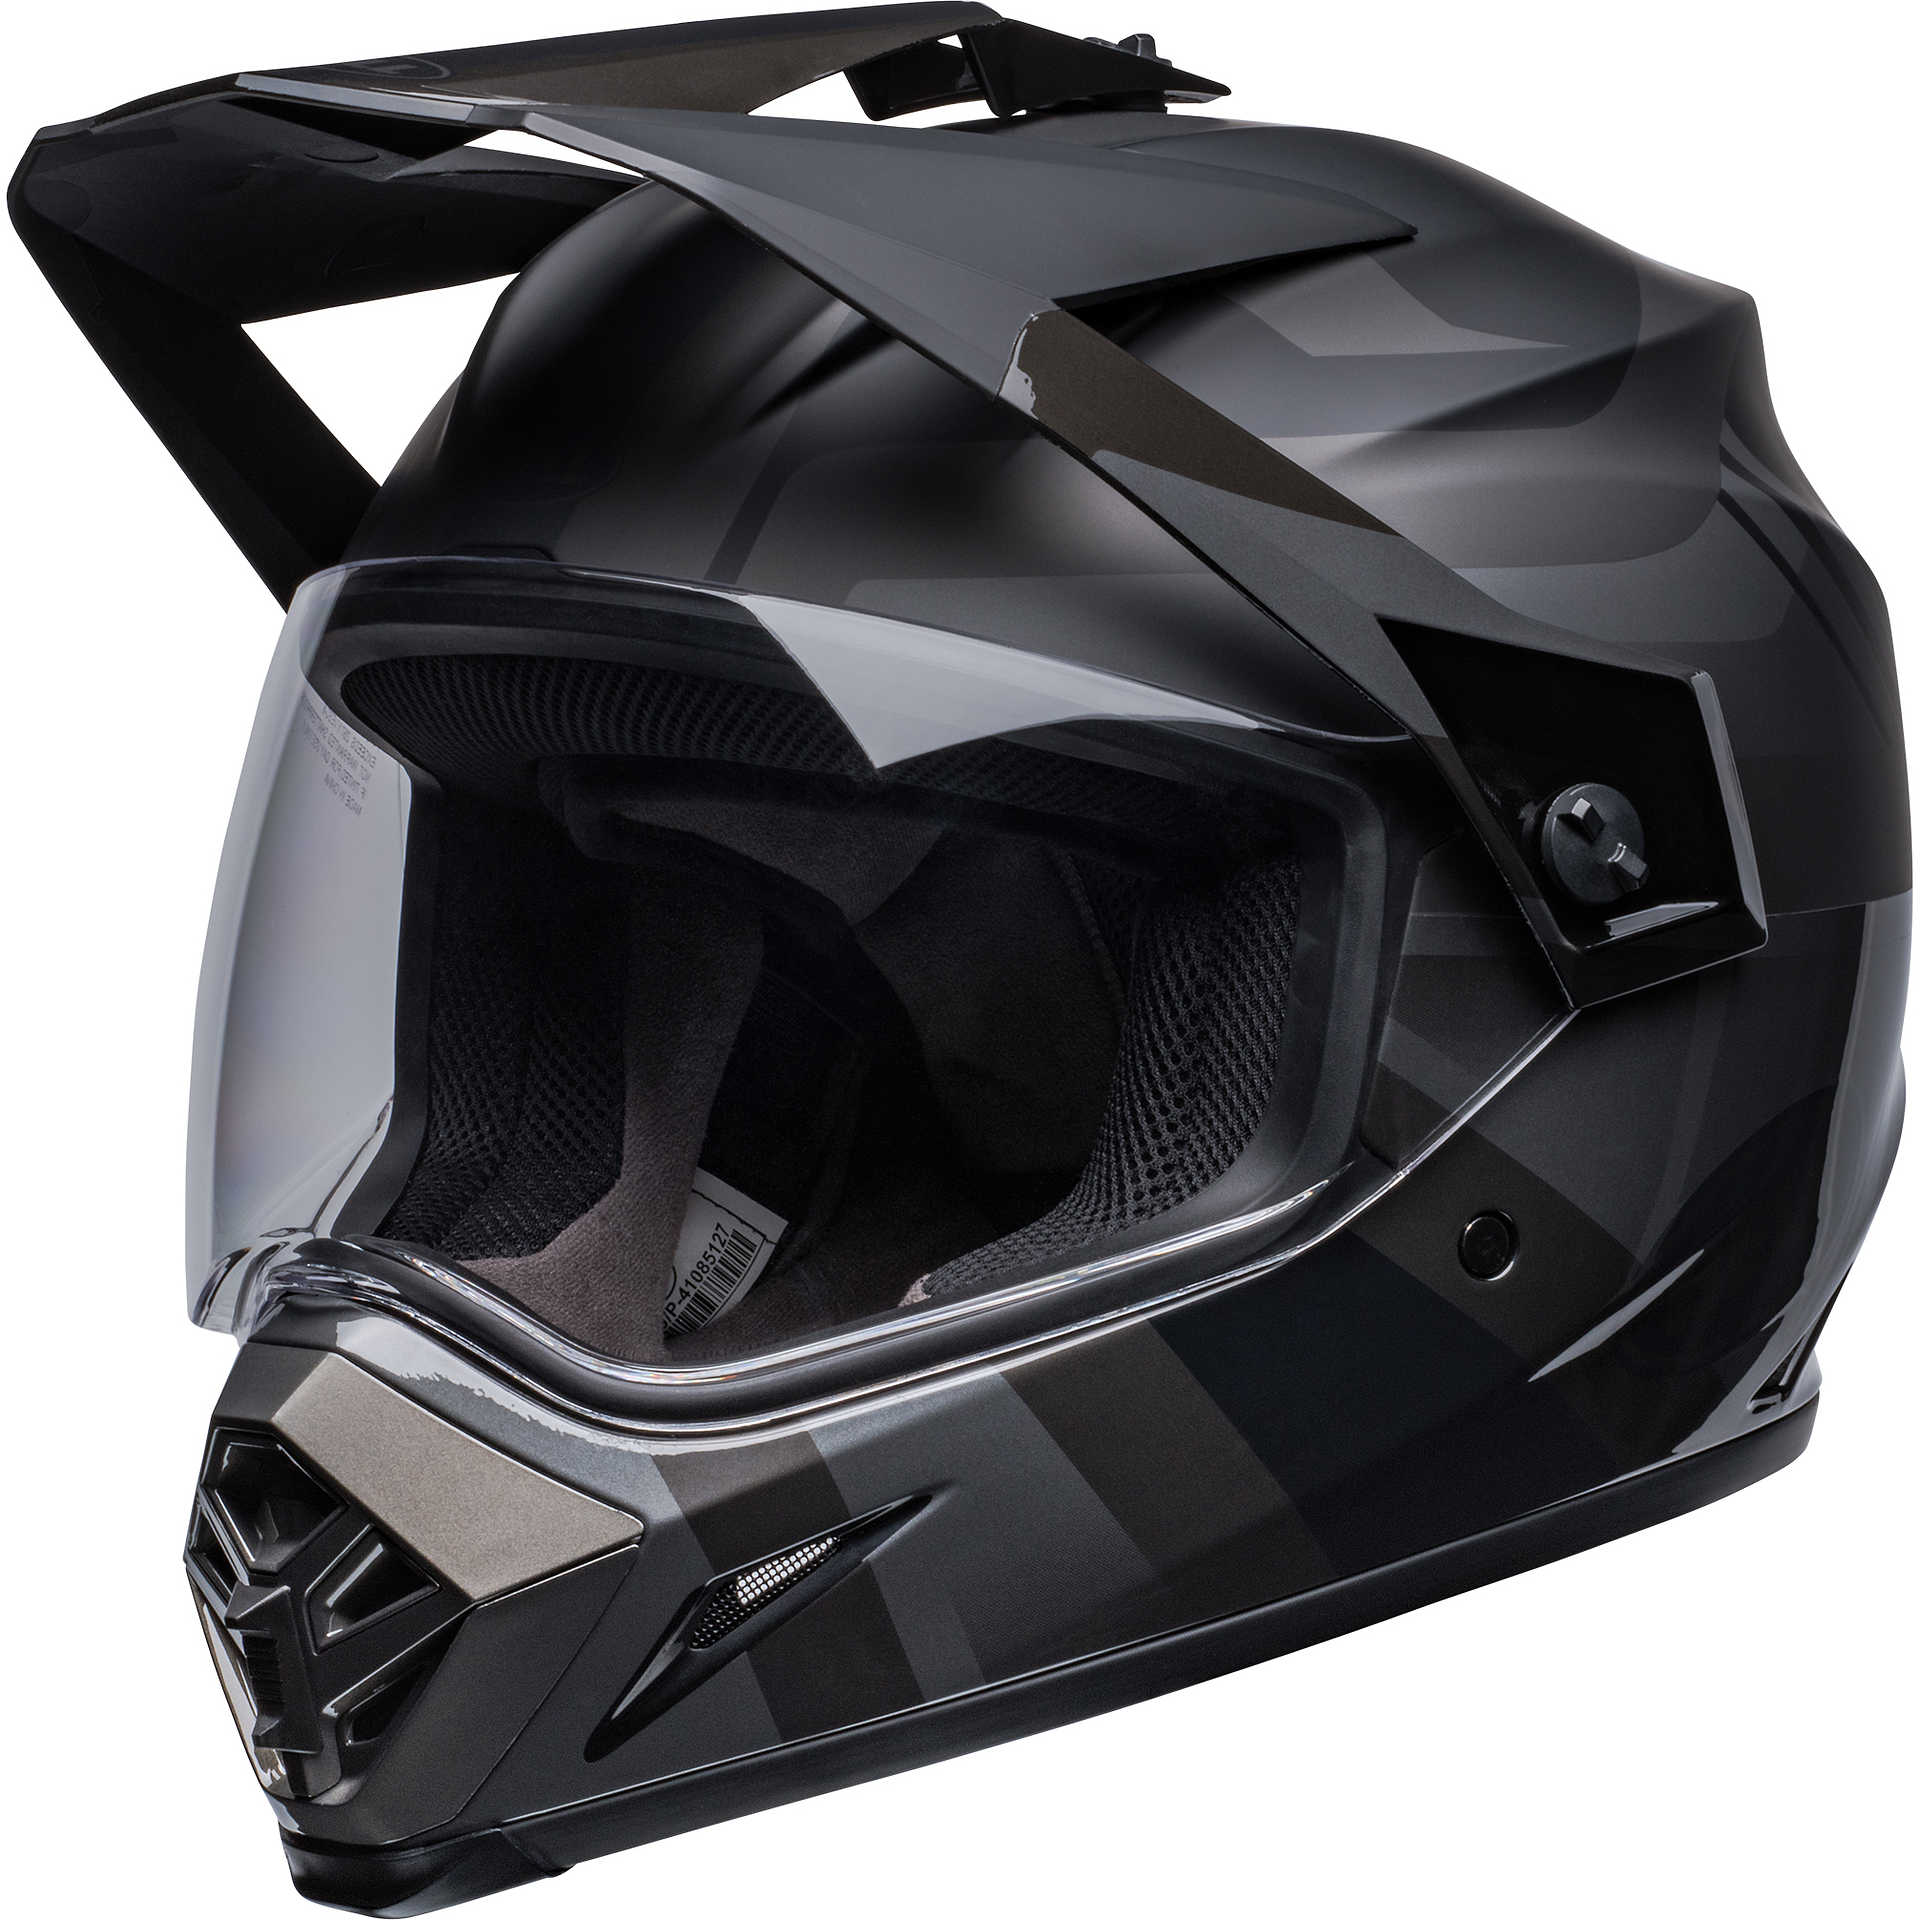 Claw Jordan casque intégral noir mat XL - Casque moto Casque